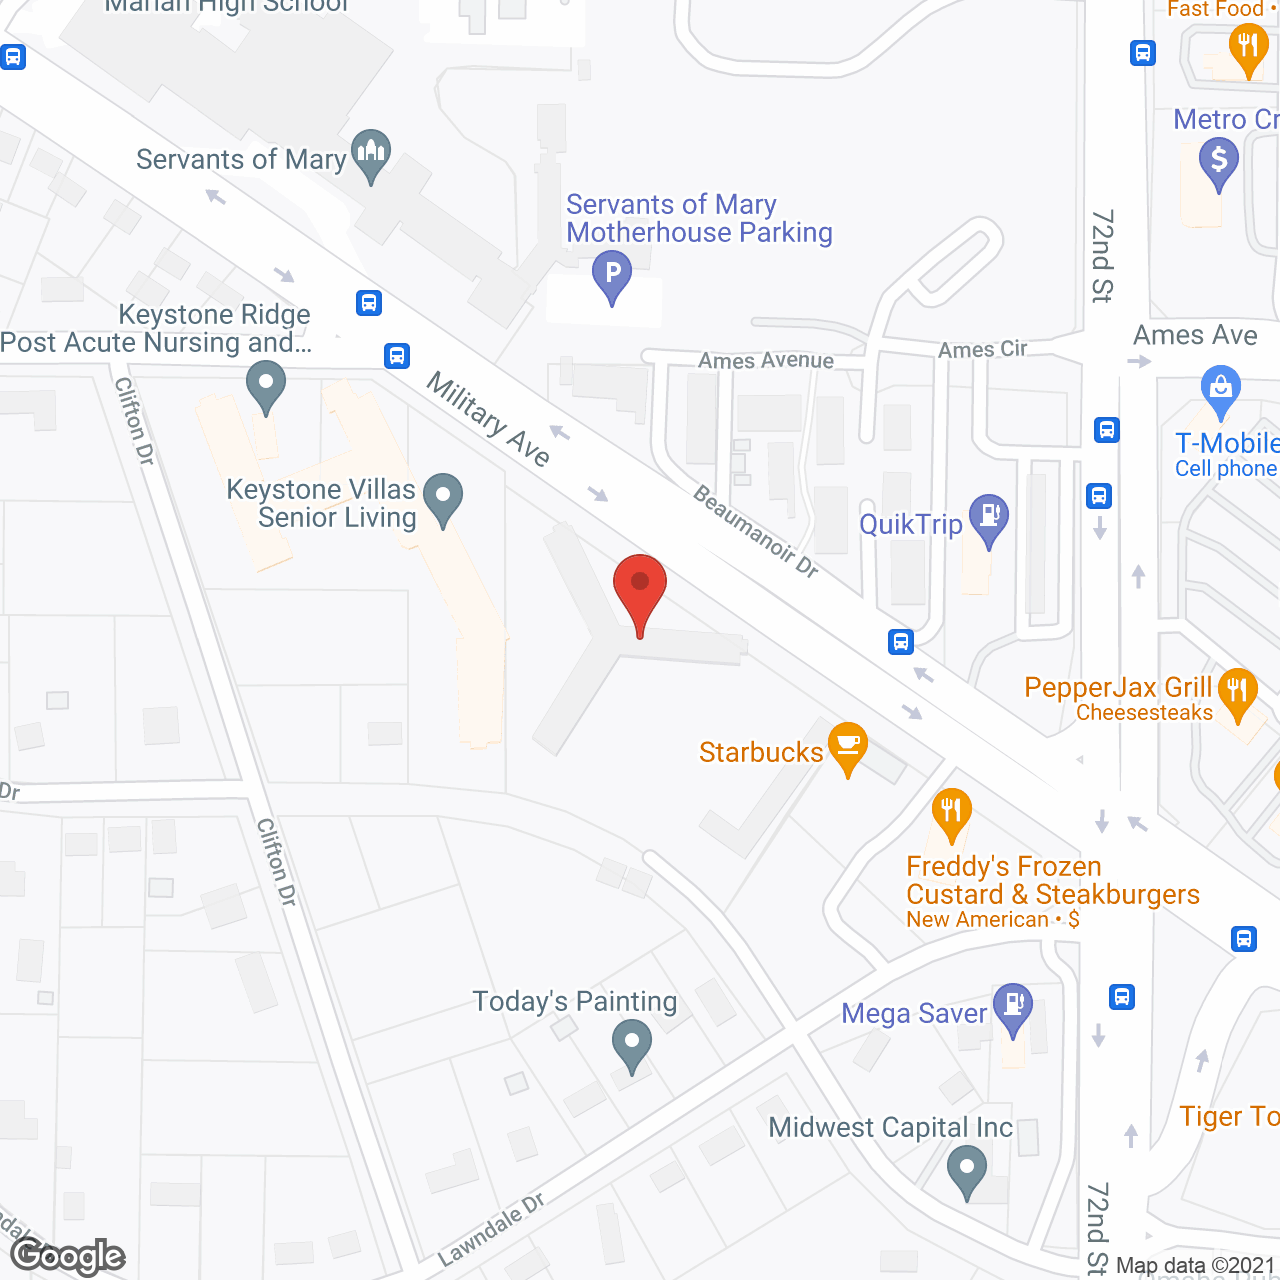 Keystone Villas Senior Living in google map